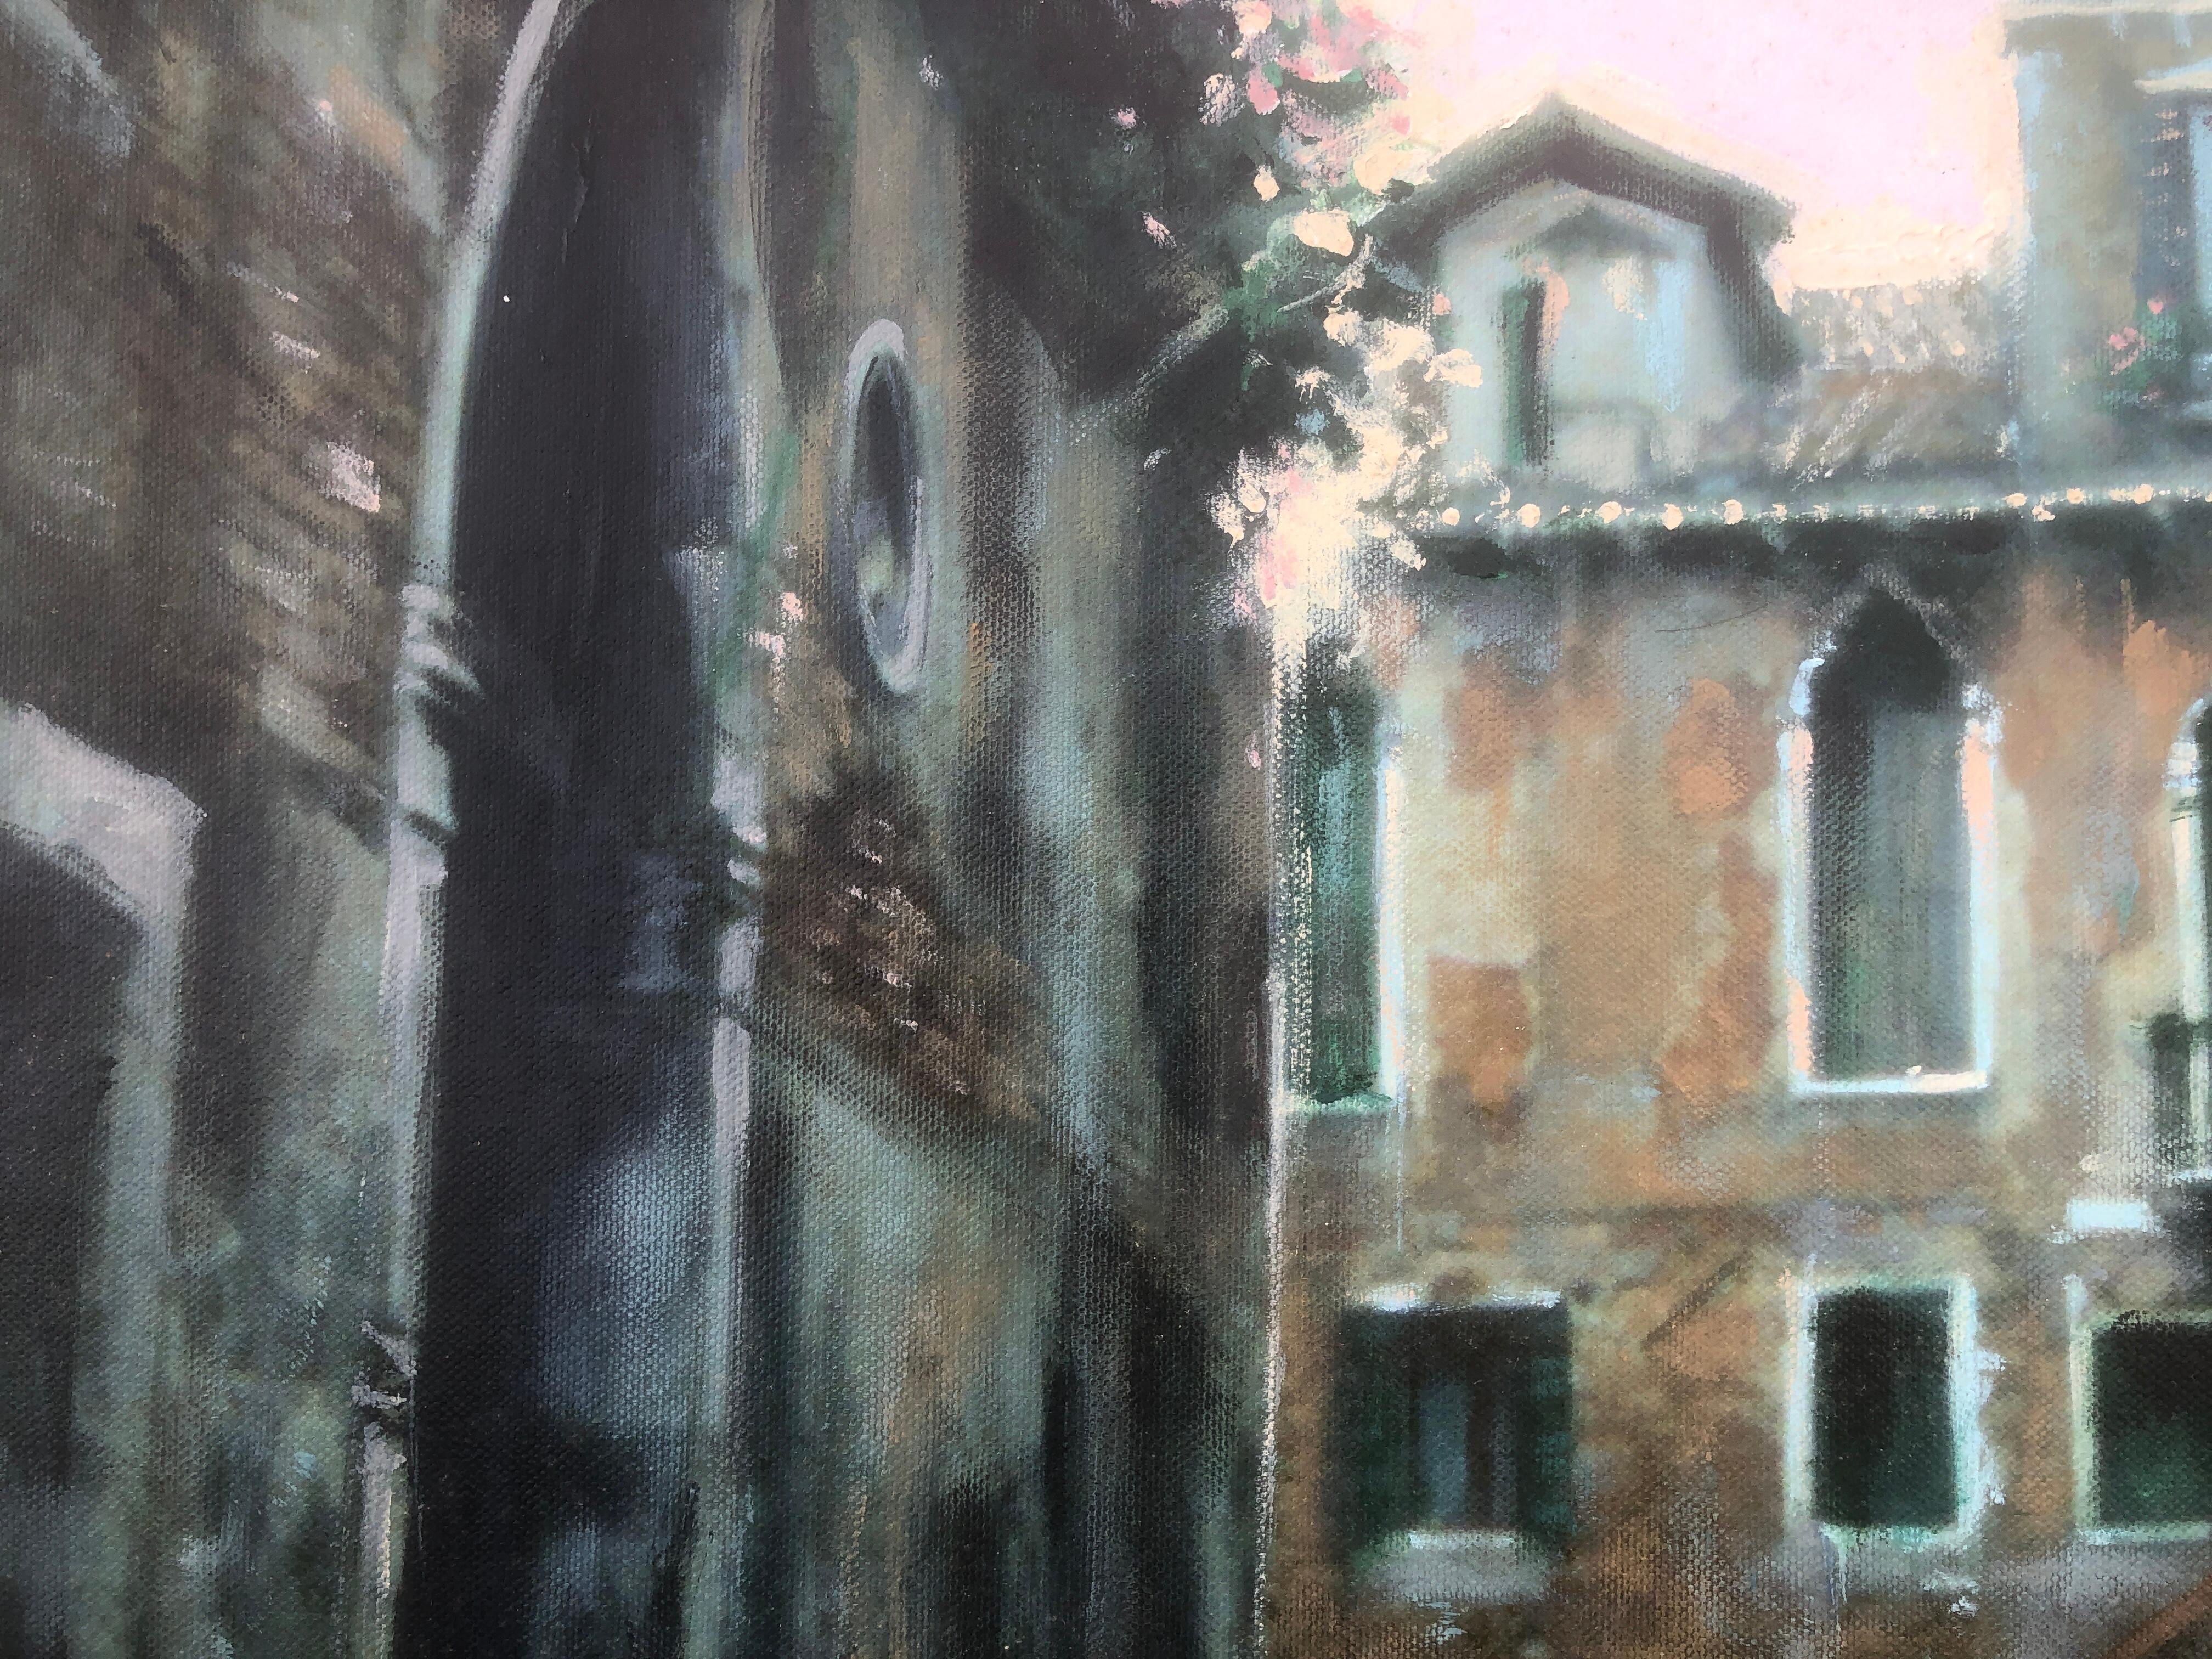 Venice gondolier mixed media on canvas 1